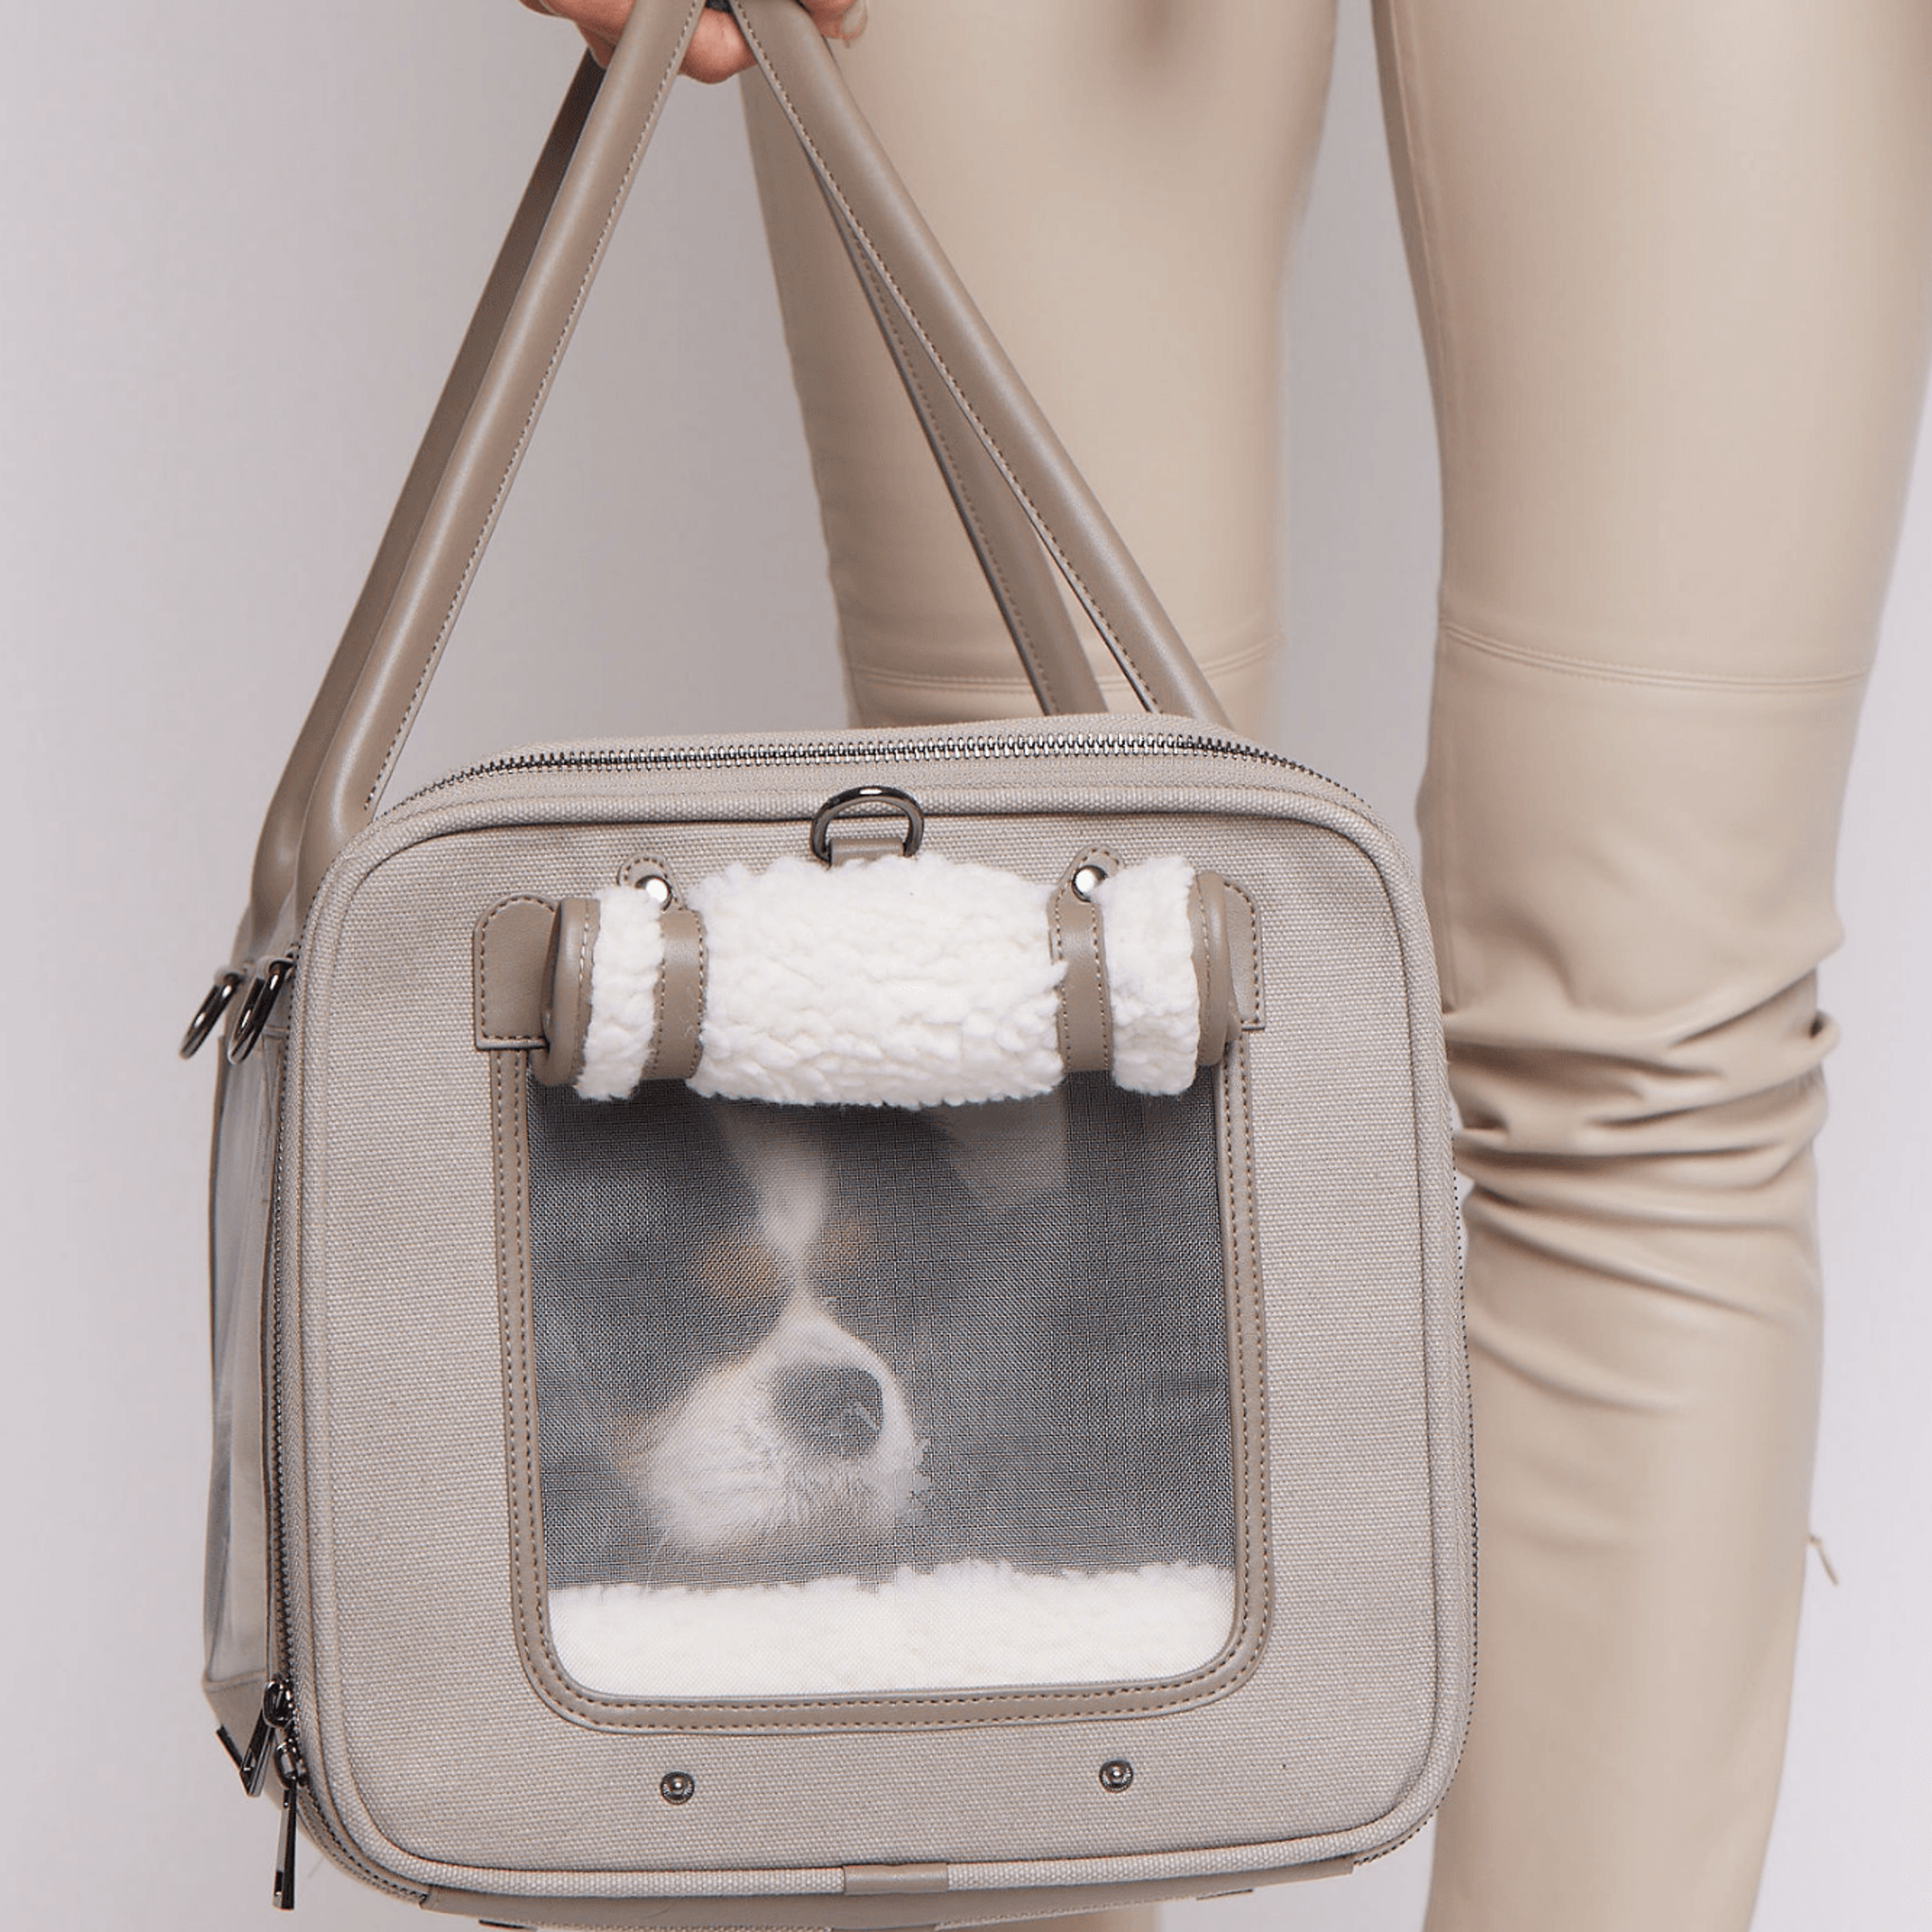 Global Citizen Pet Carrier Bag